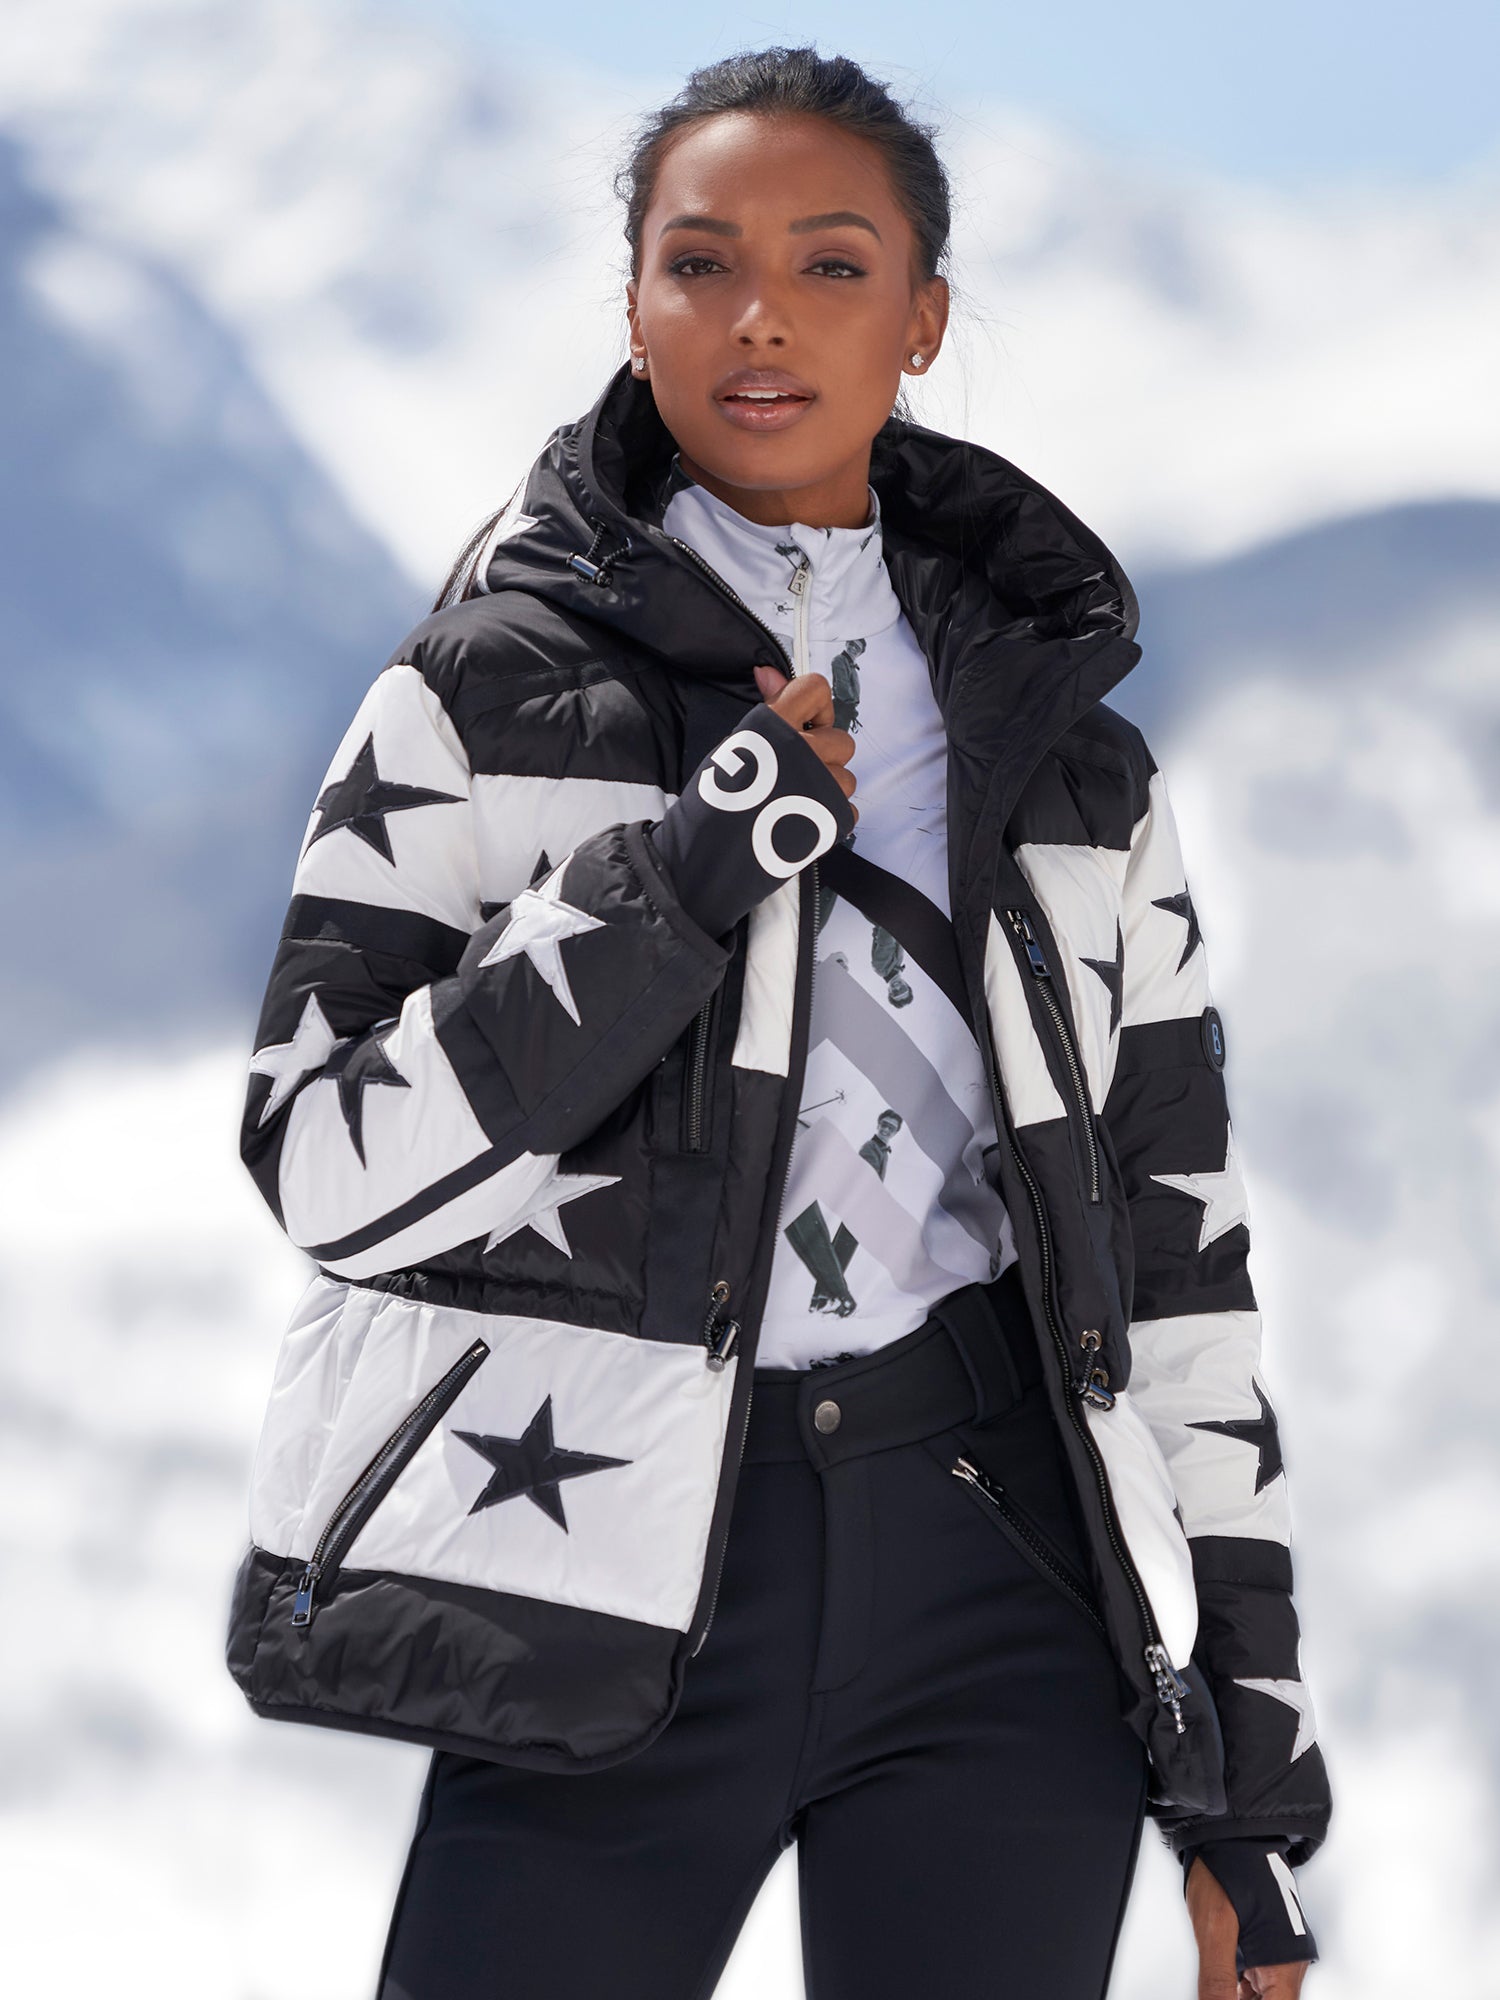 Paula Down Ski Jacket